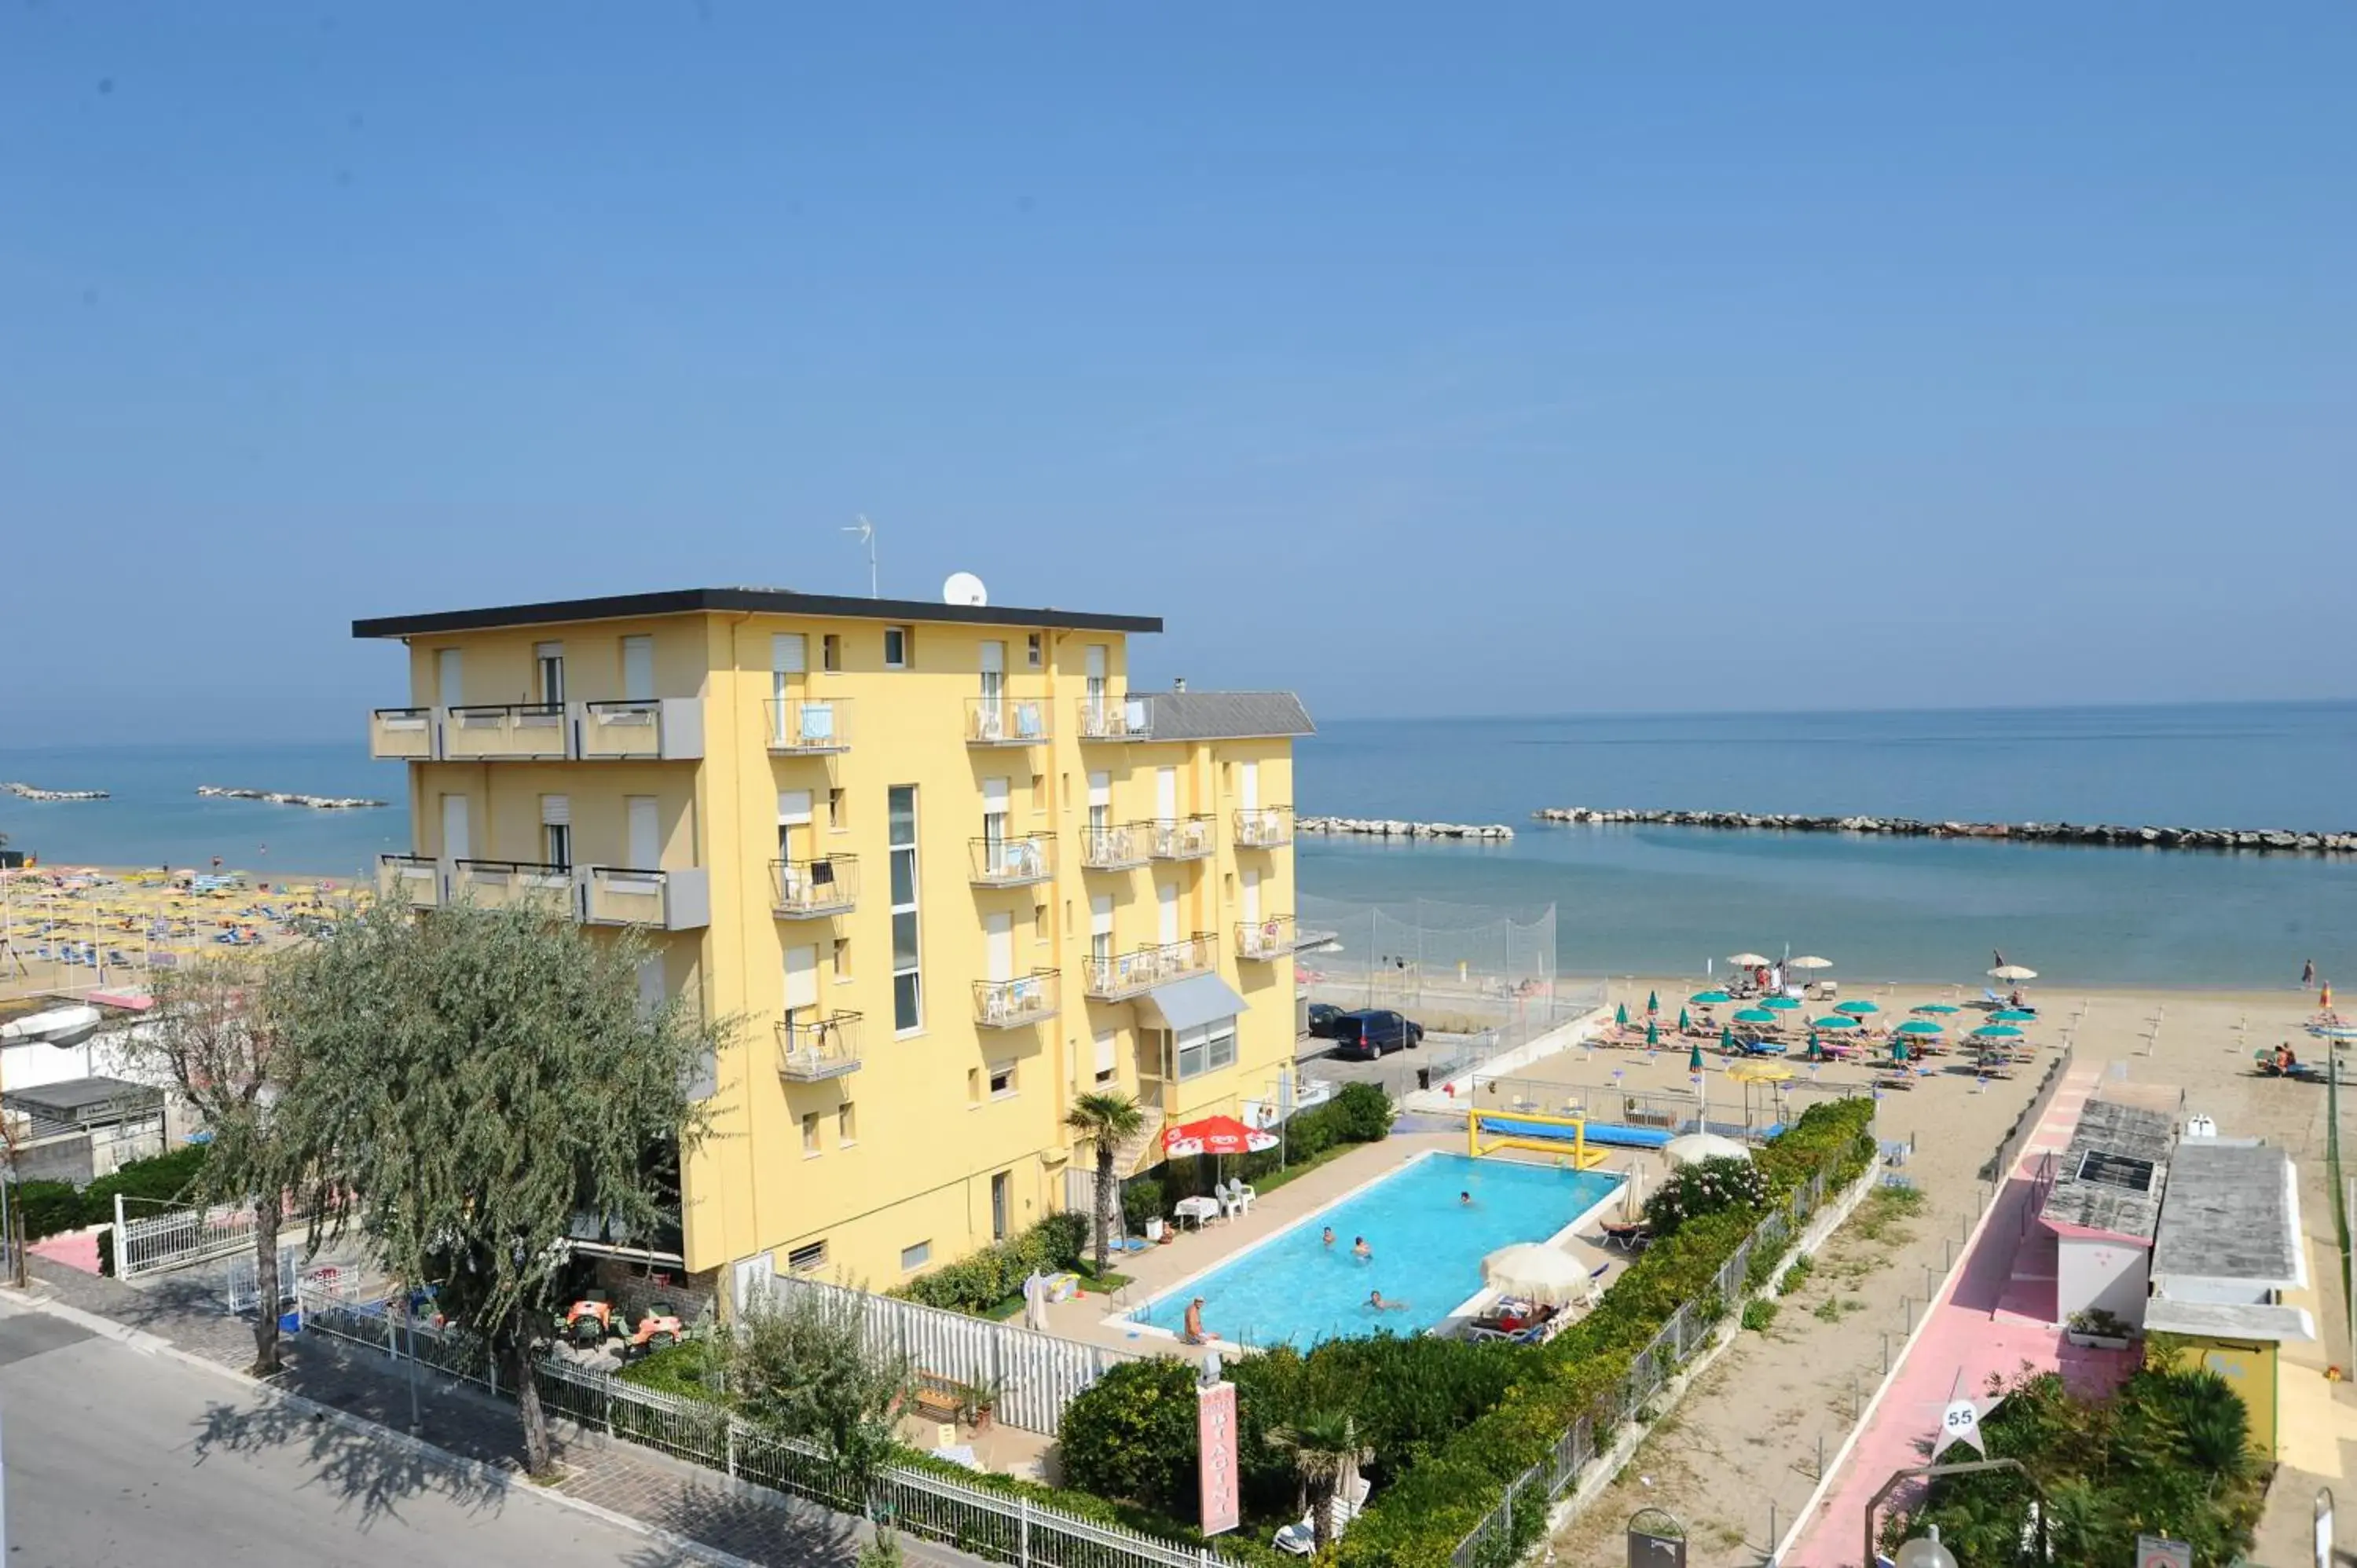 Swimming pool, Pool View in Hotel Biagini